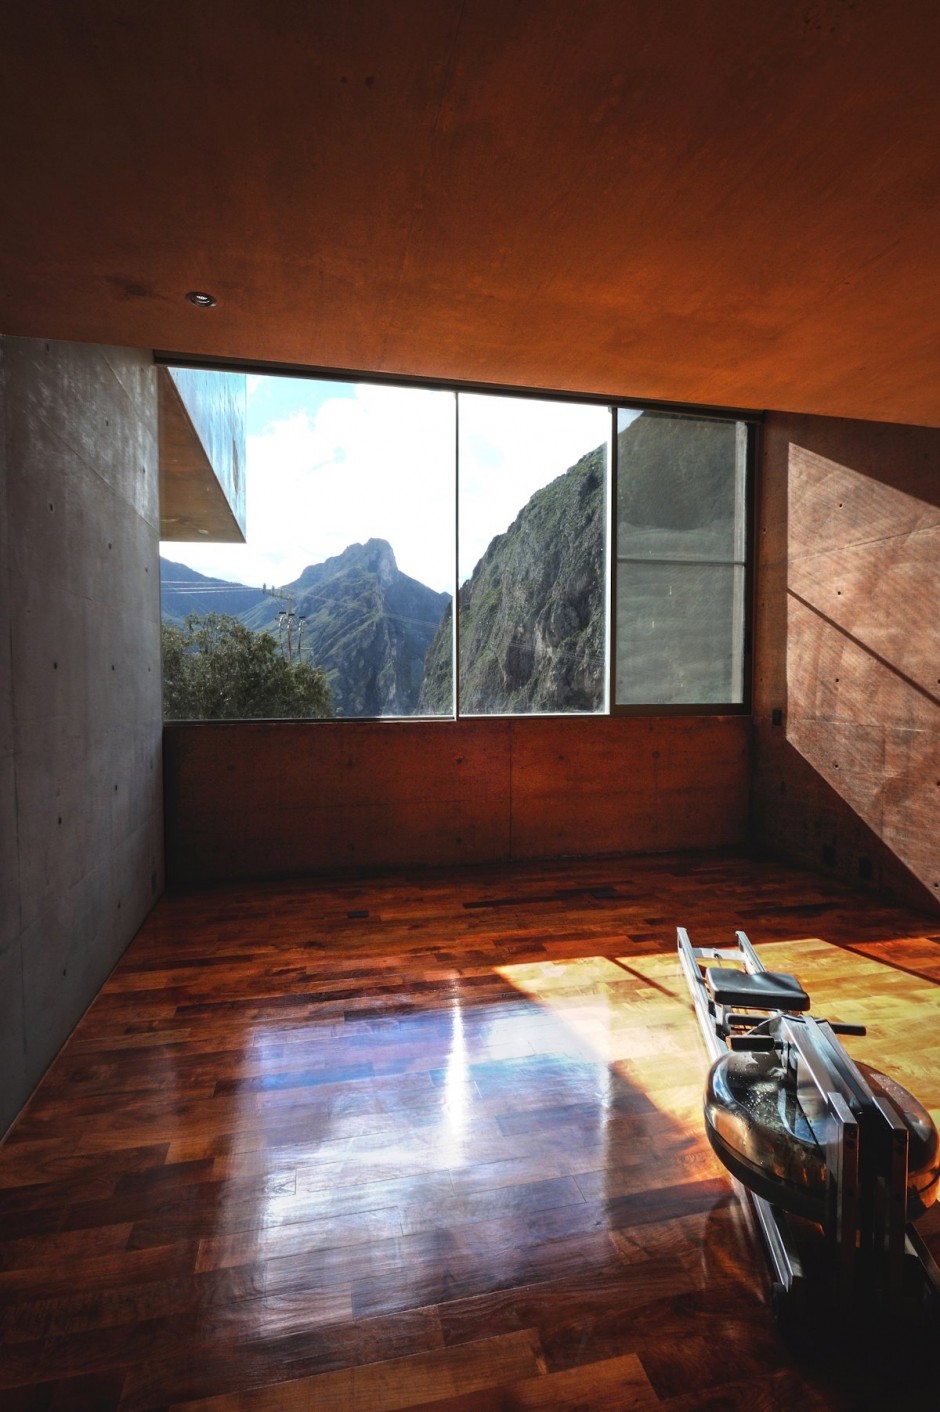 Casa Narigua by P+0 Architecture